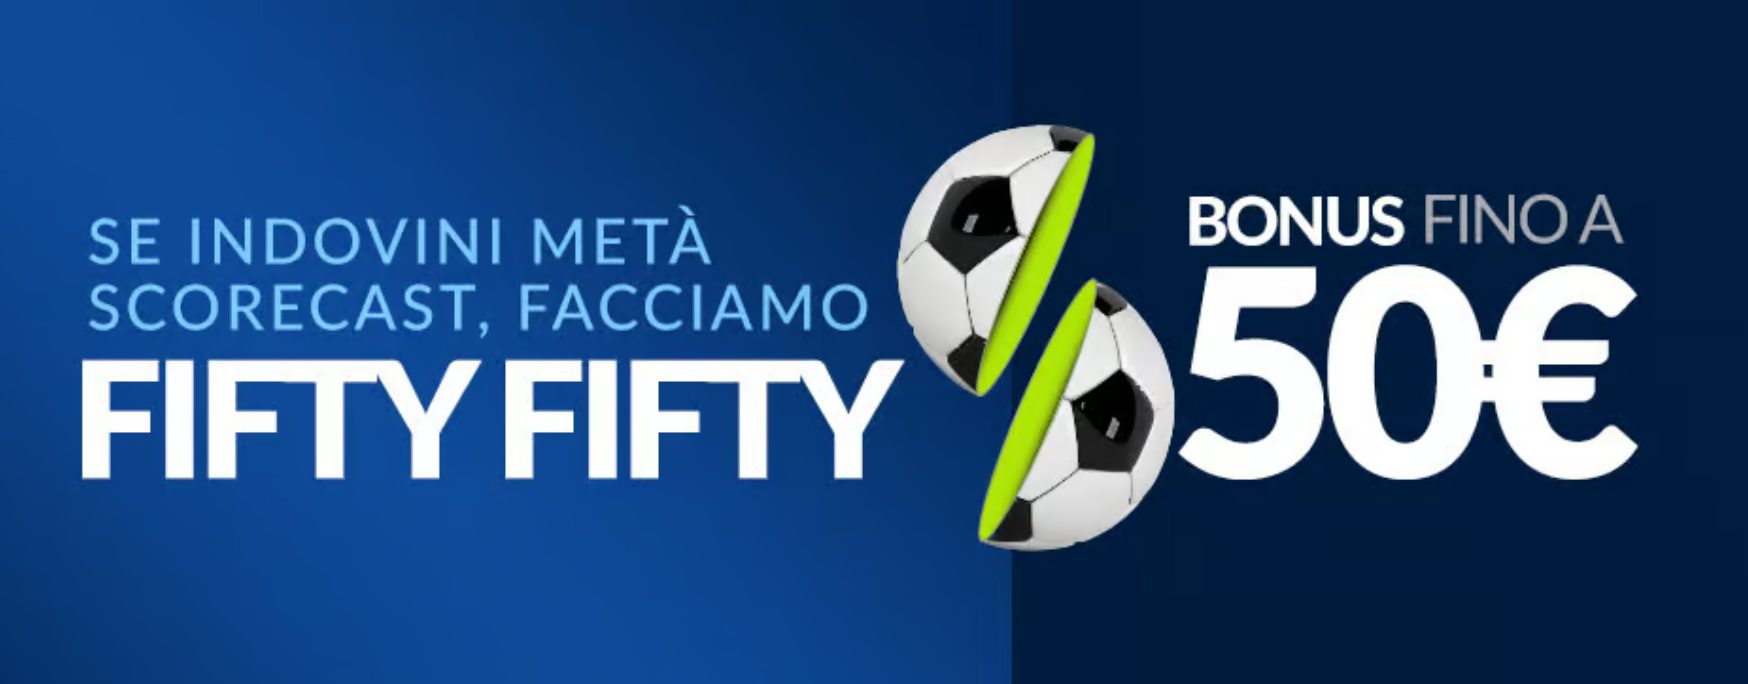 Bonus Fifty Fifty per Napoli Inter su Eurobet